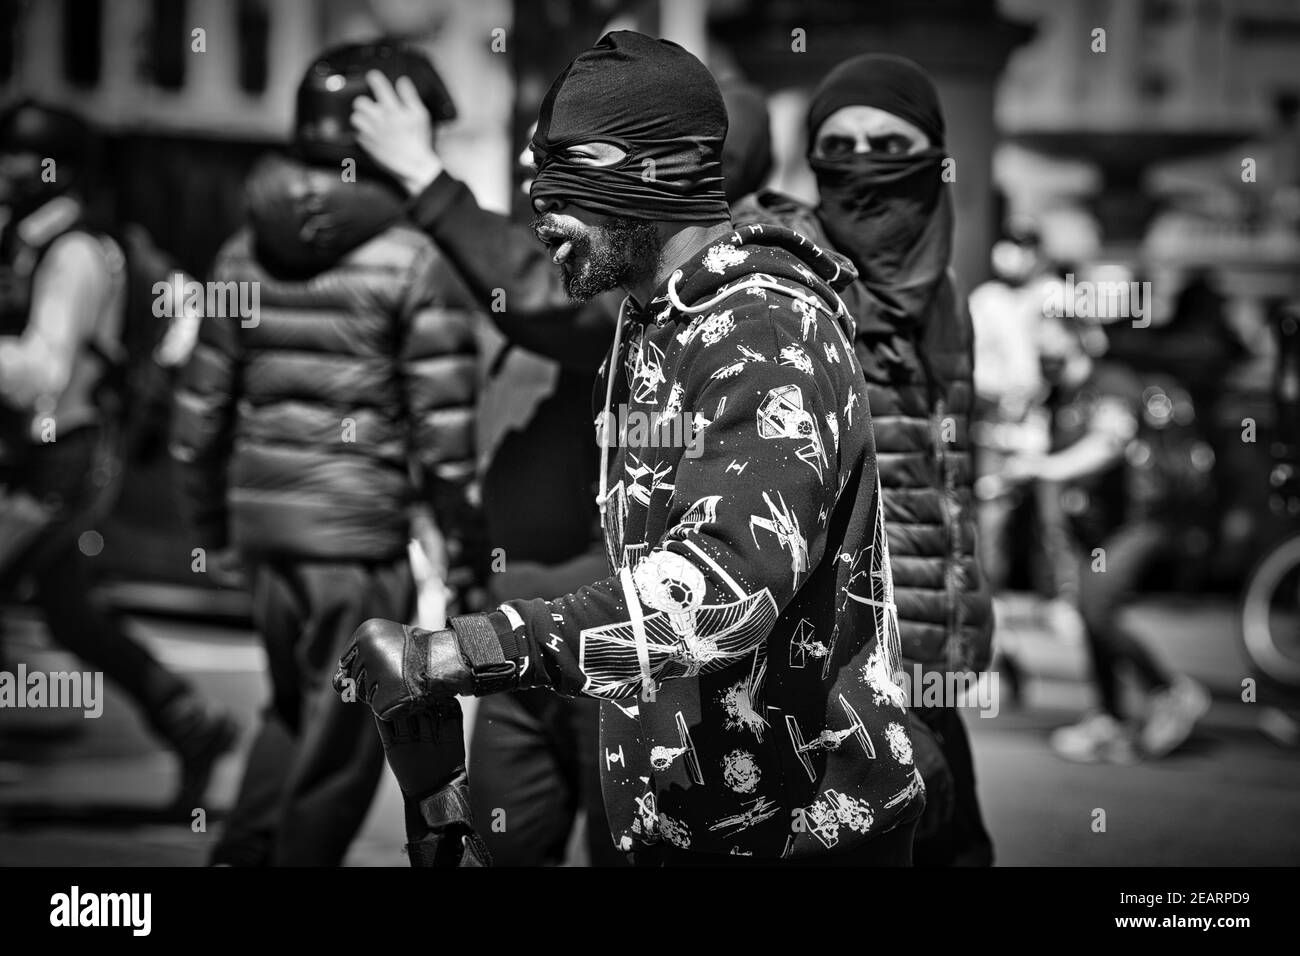 Londres 13 de junio de 2020 Los manifestantes del BLM se enfrentaron con grupos de extrema derecha y la policía en Trafalgar Square Foto de stock